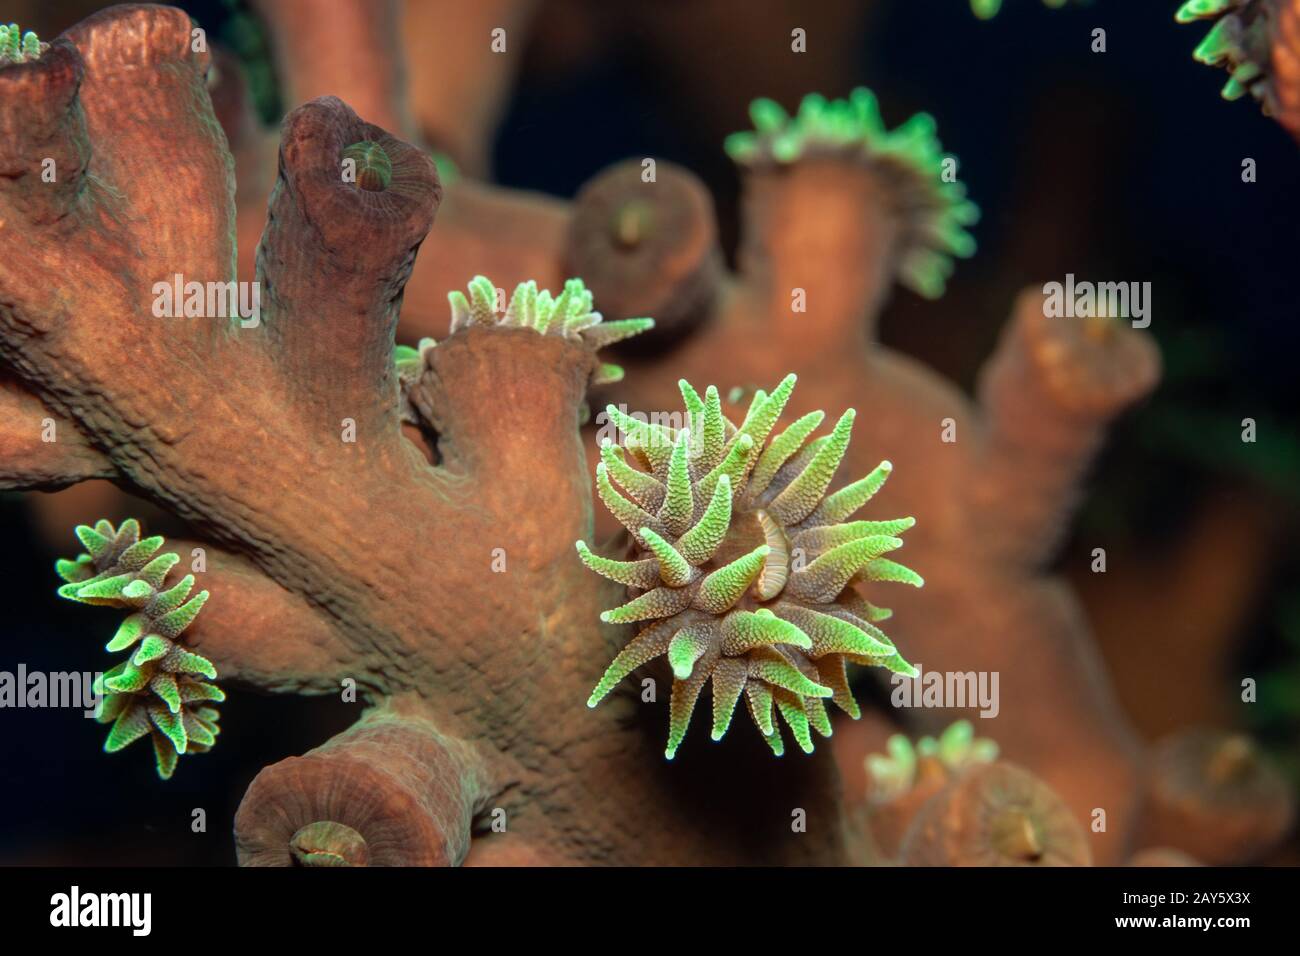 Polypes de corail capturés avec objectif macro dans une plongée aux Maldives. Contraste incroyable de la couleur. Banque D'Images